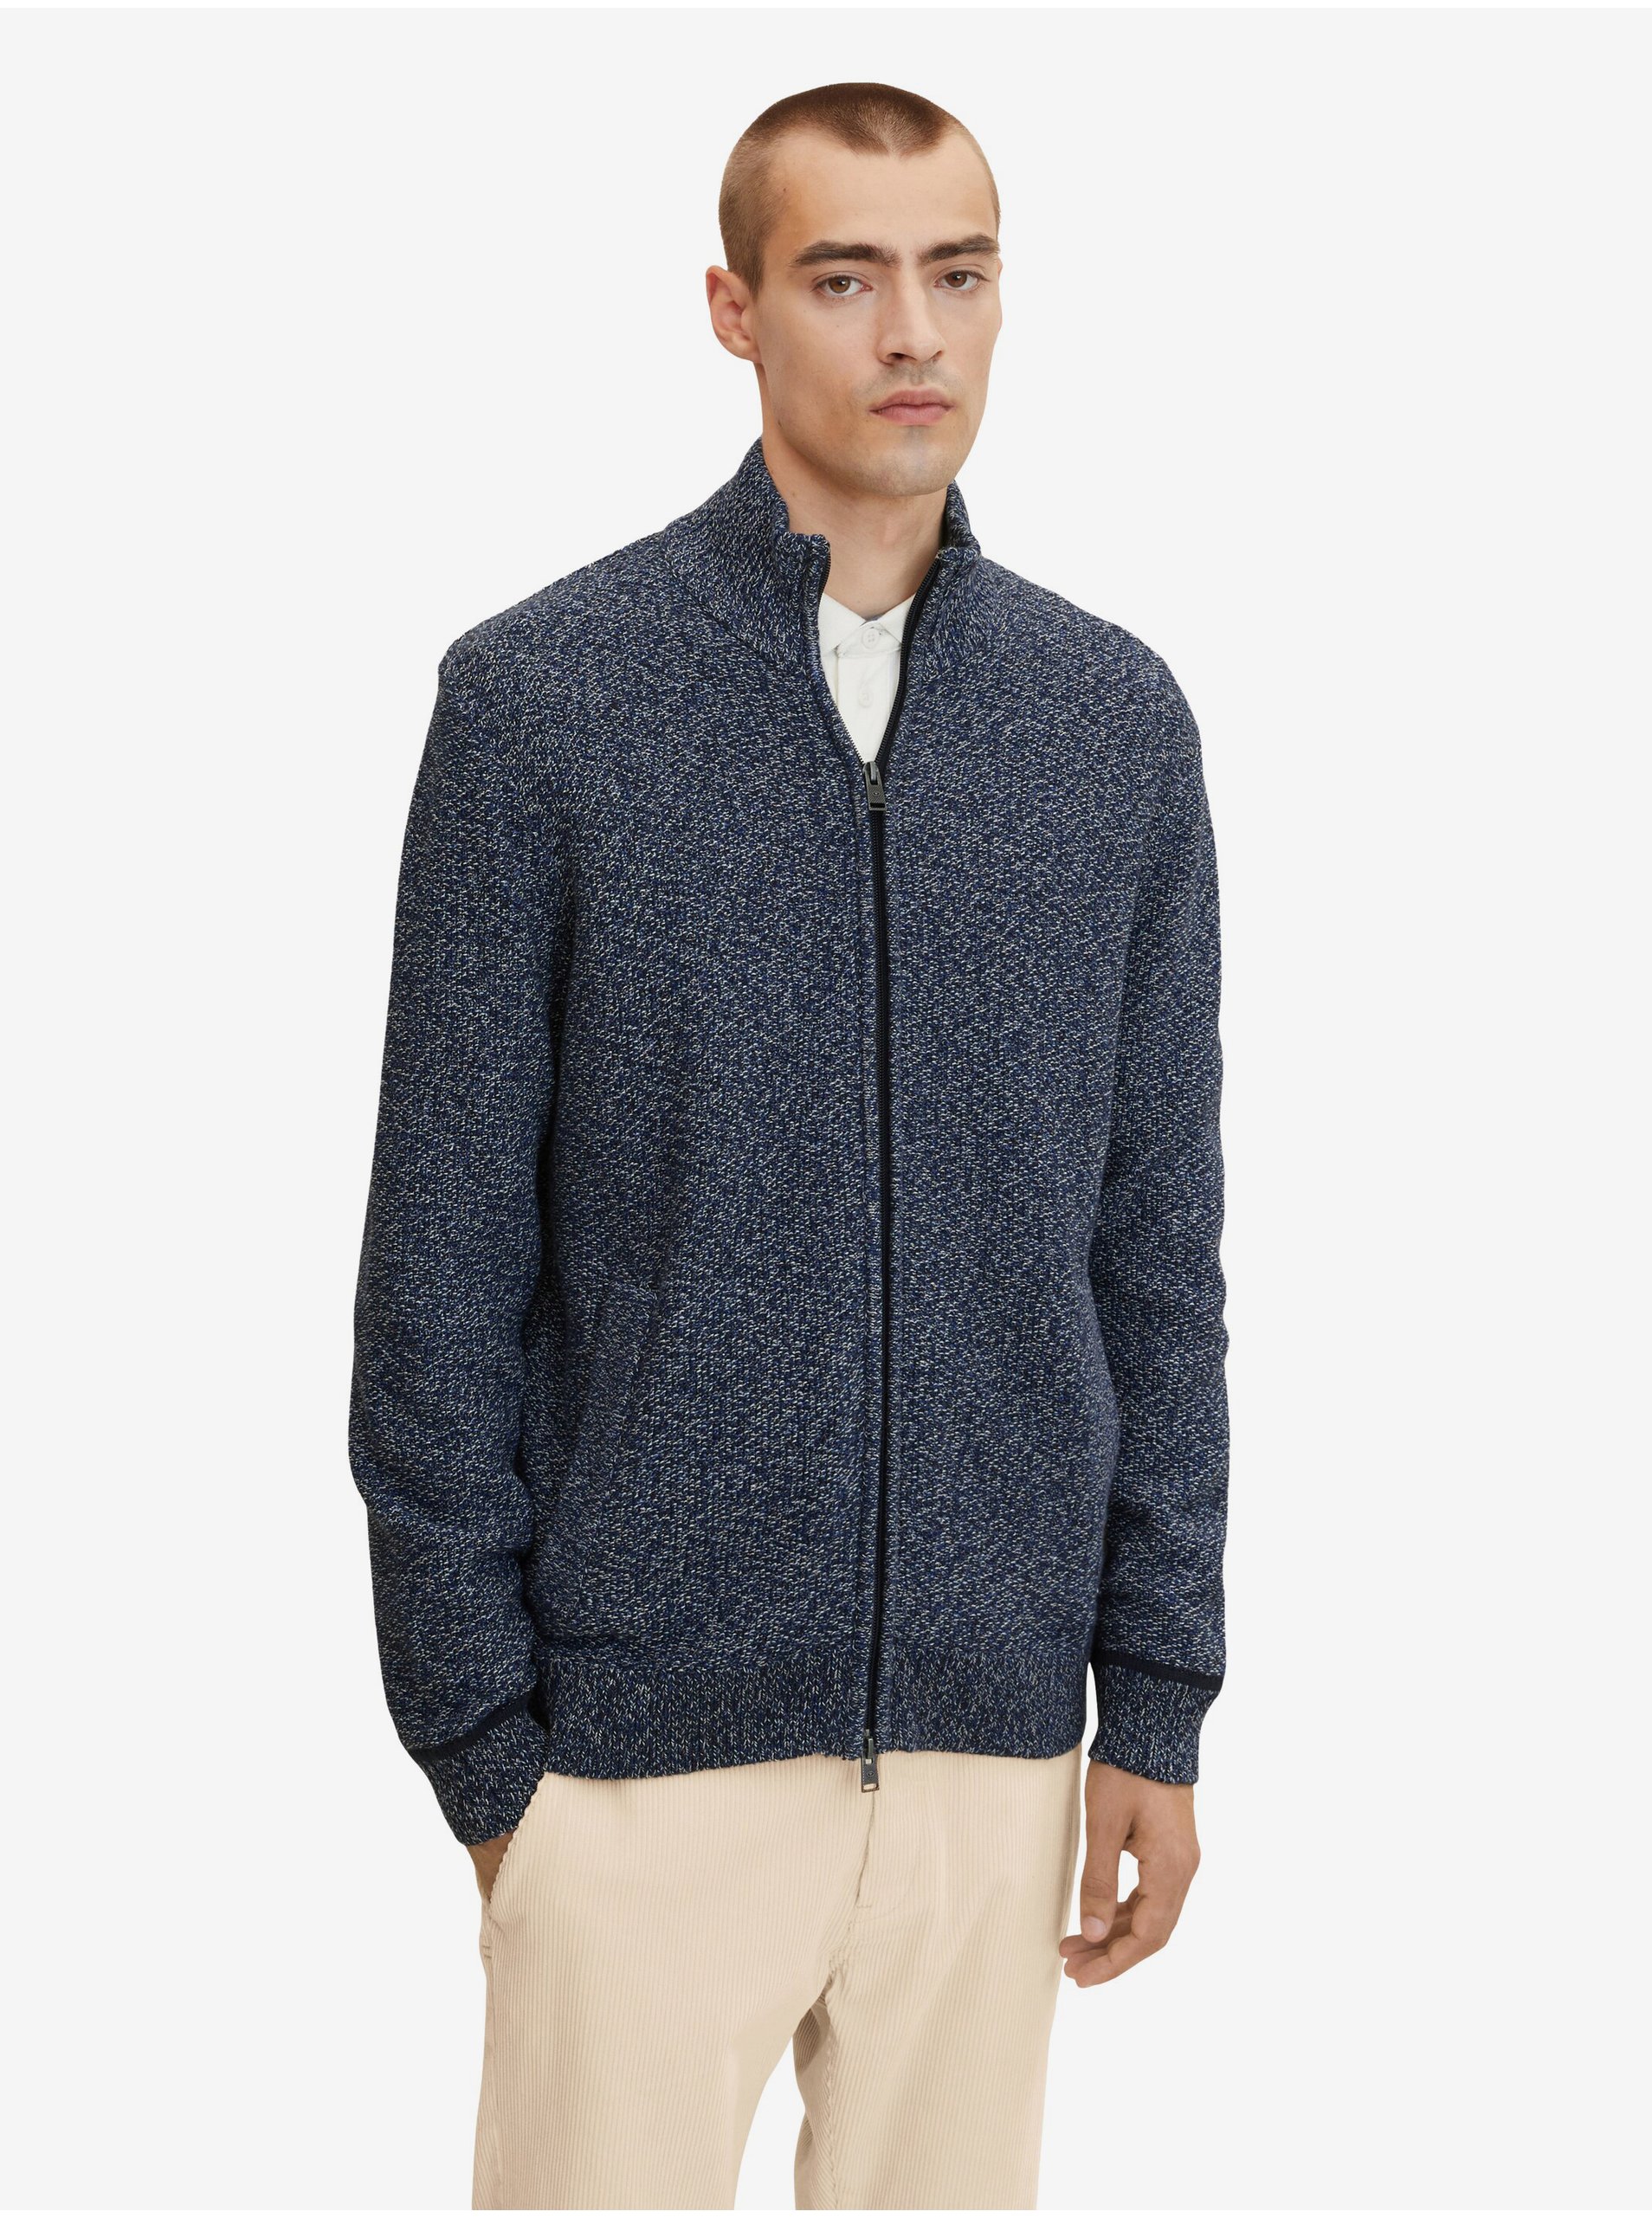 Lacno Tmavo modrý pánsky melírovaný sveter na zips Tom Tailor